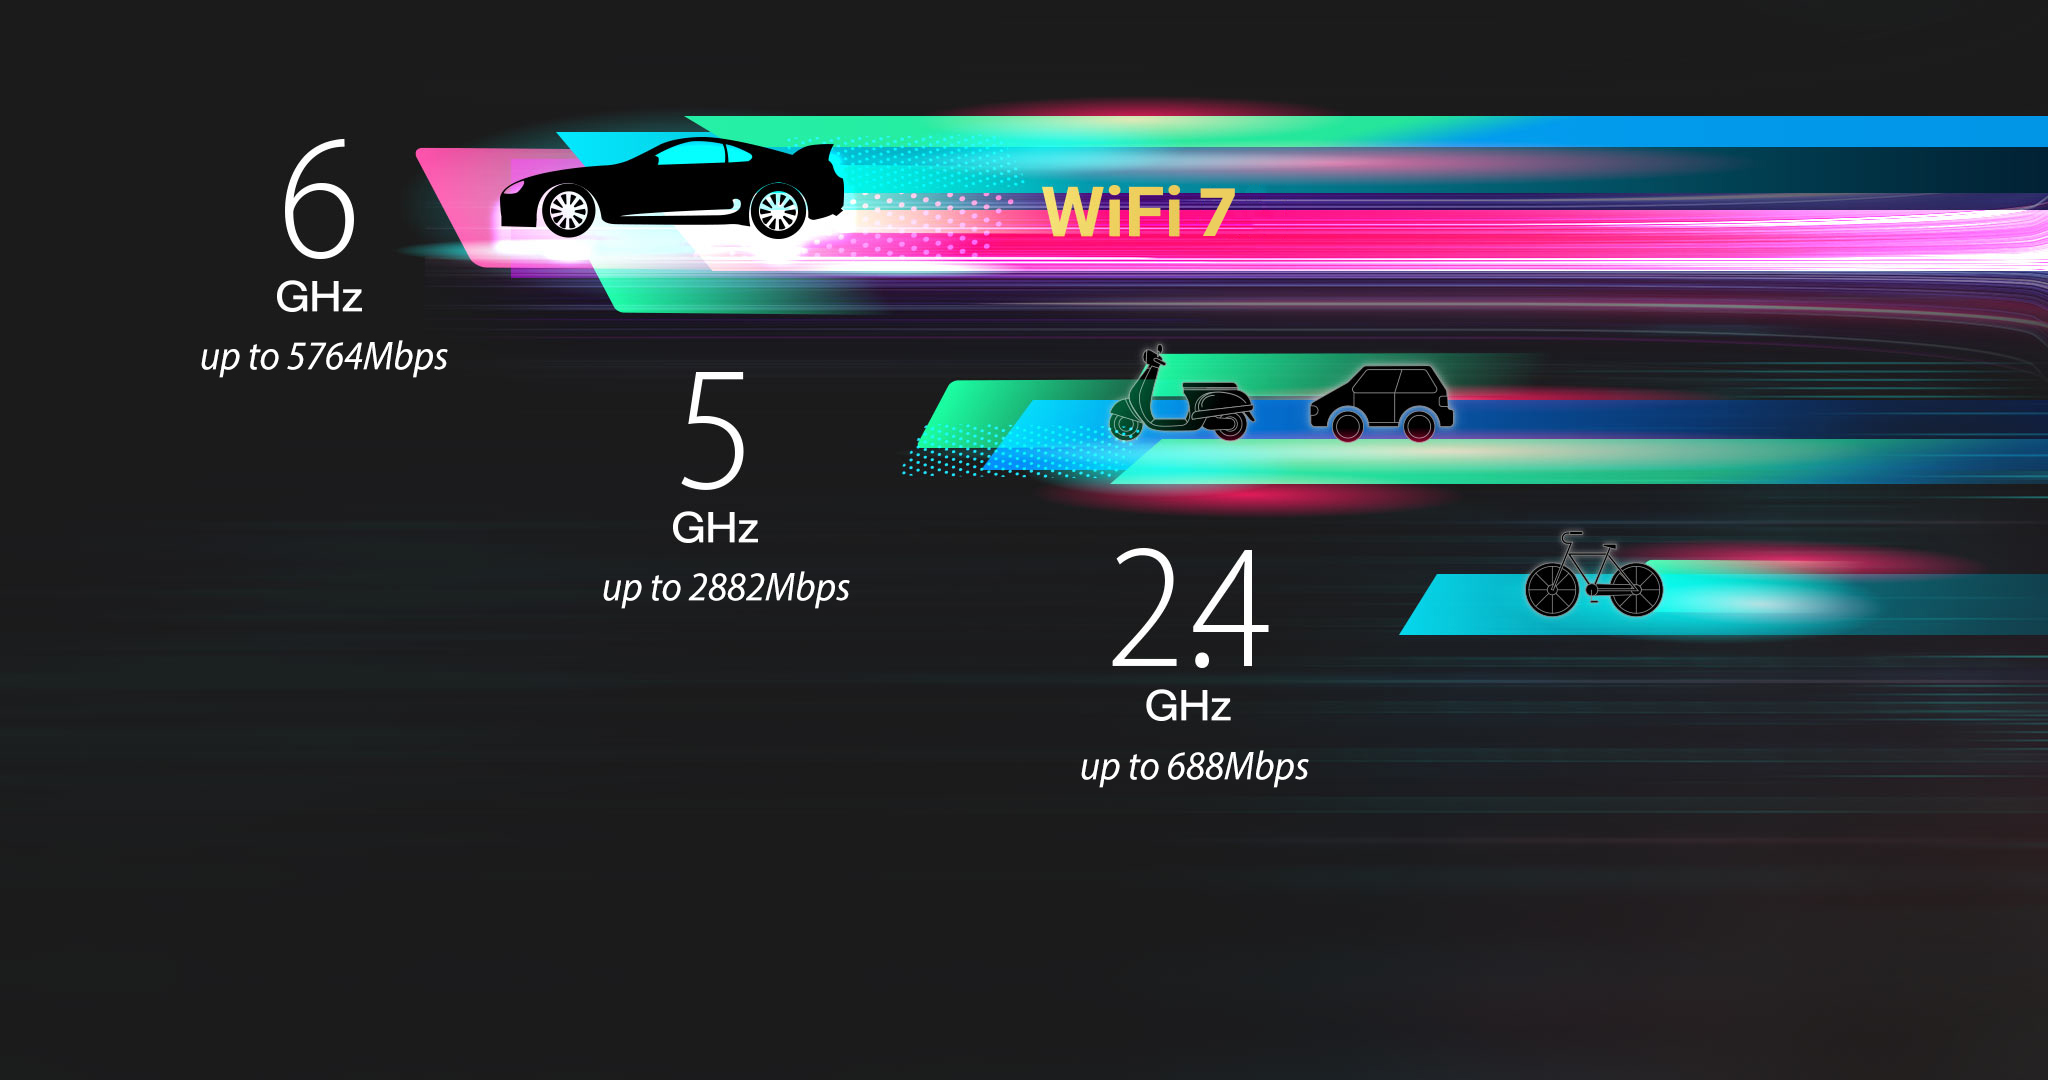 Стандарт Wi-Fi 7 із діапазоном 6 ГГц пропонує канали шириною 320 МГц, використання яких збільшує швидкість до 5764 Мбіт/с.